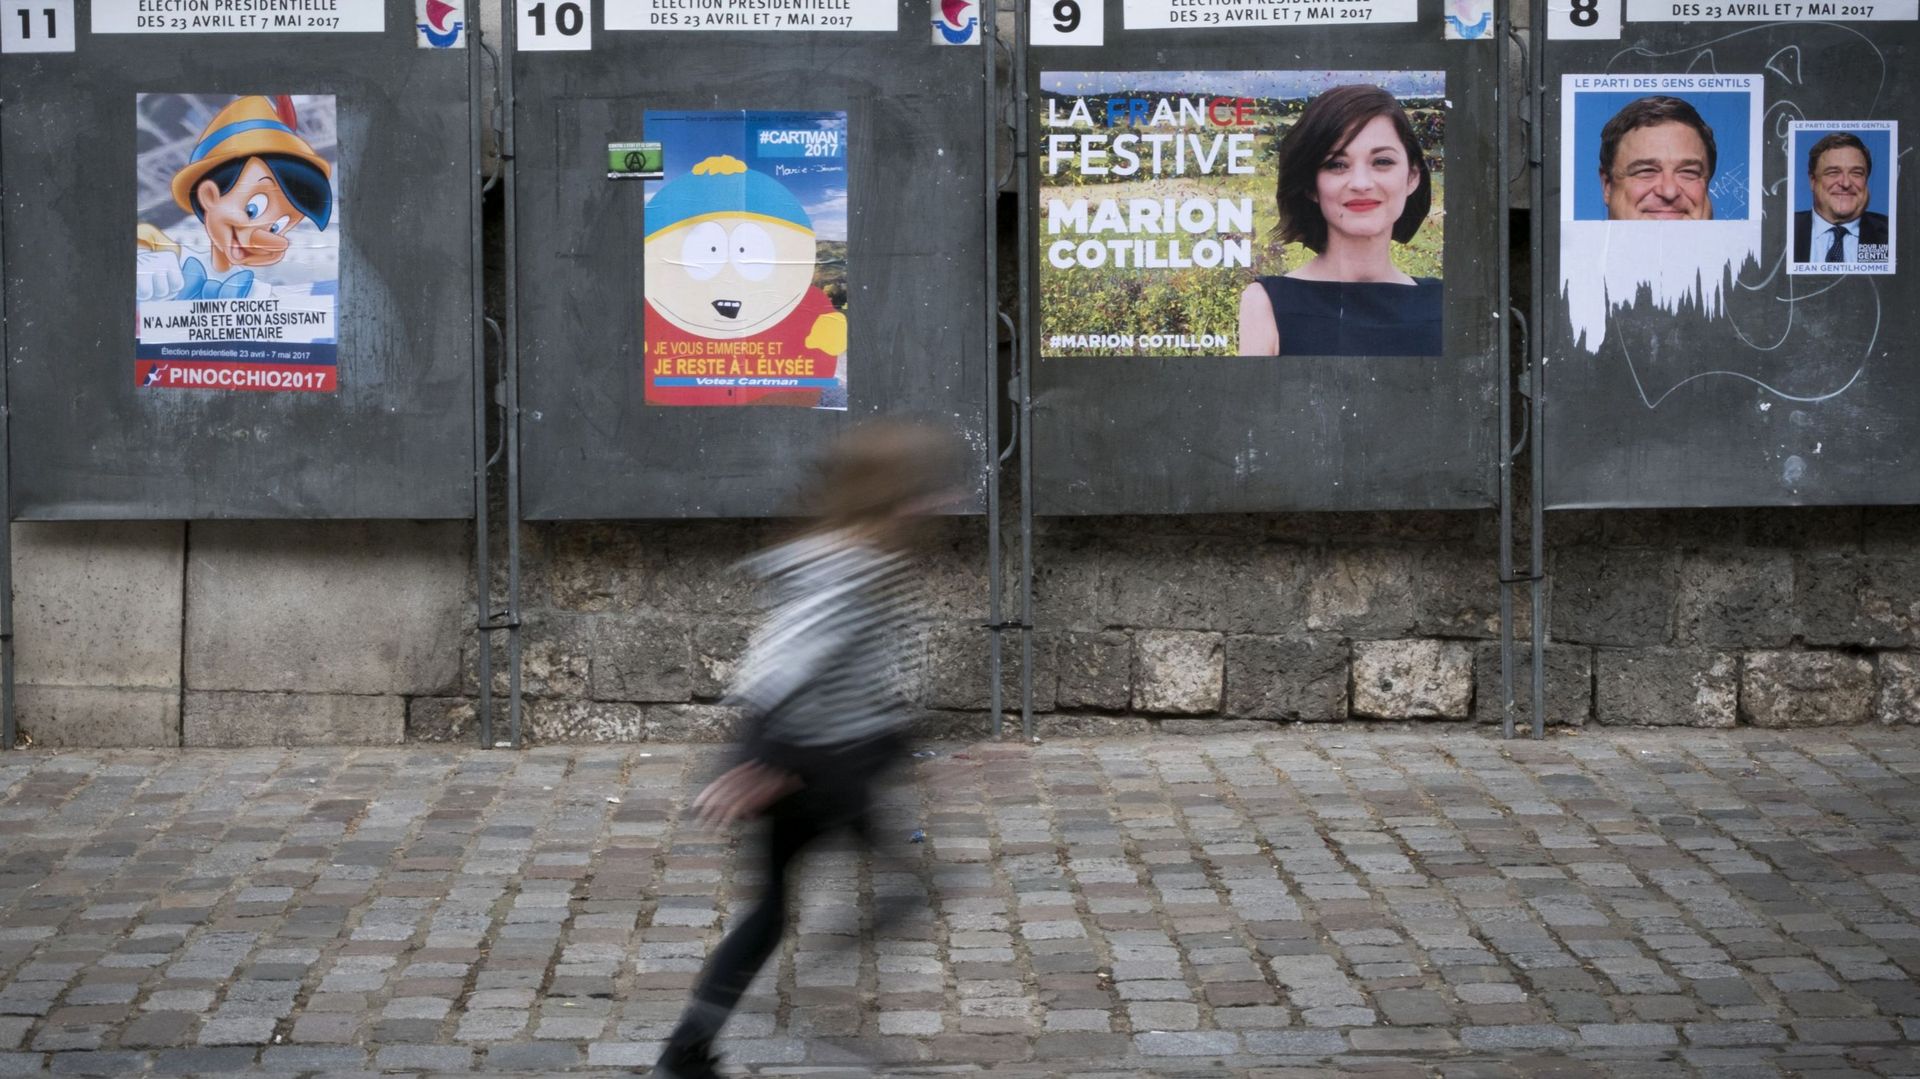 Présidentielle française: 6 choses à savoir à 7 jours du 1er tour